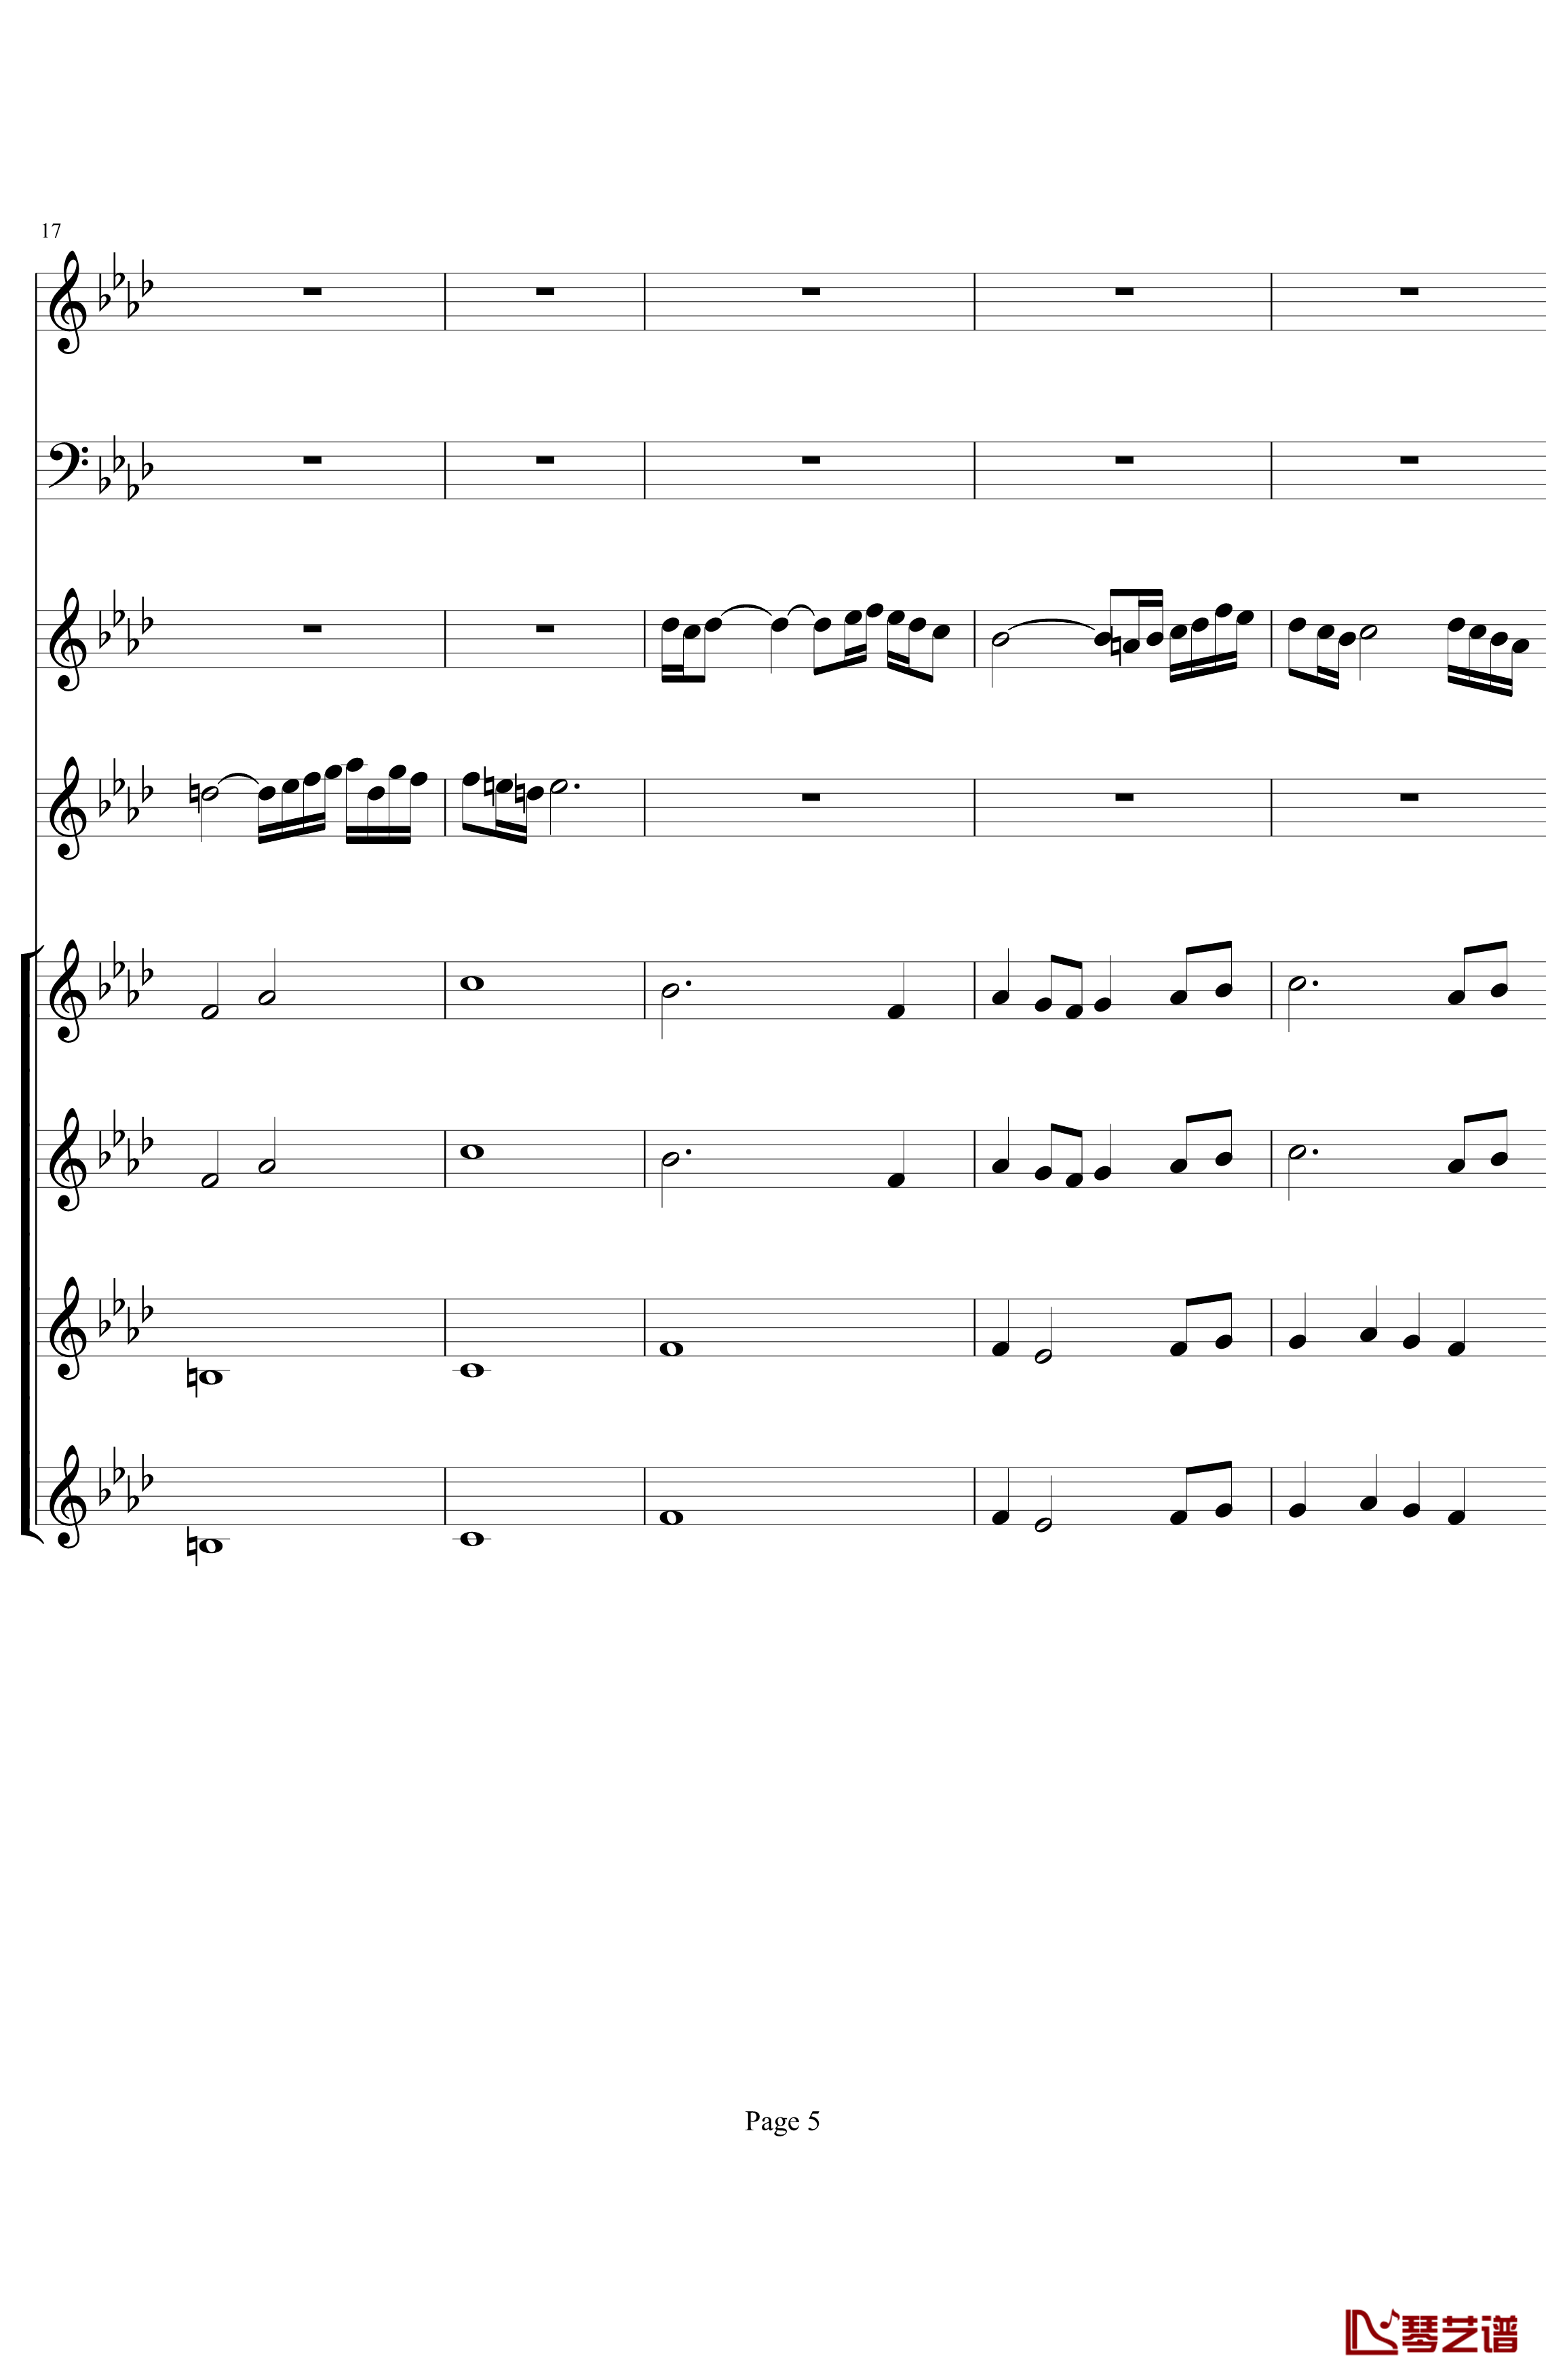 双童声协奏曲钢琴谱-Concerto Pour Deux Voix-合唱版-Saint-Preux5